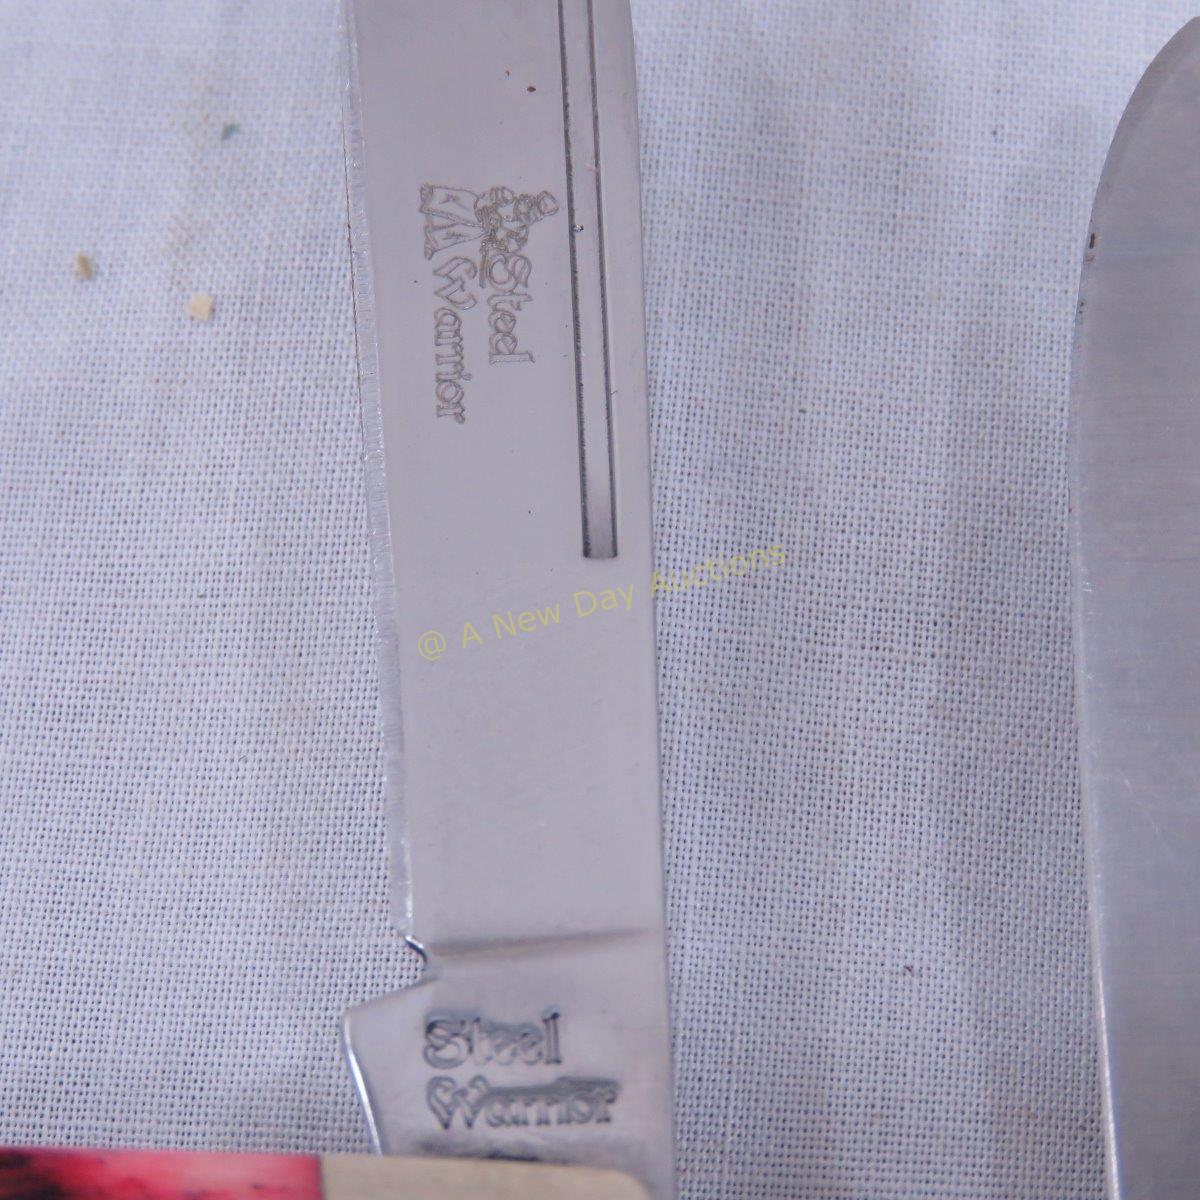 Vintage & Modern Pocket Knives- Gerber, Imperial